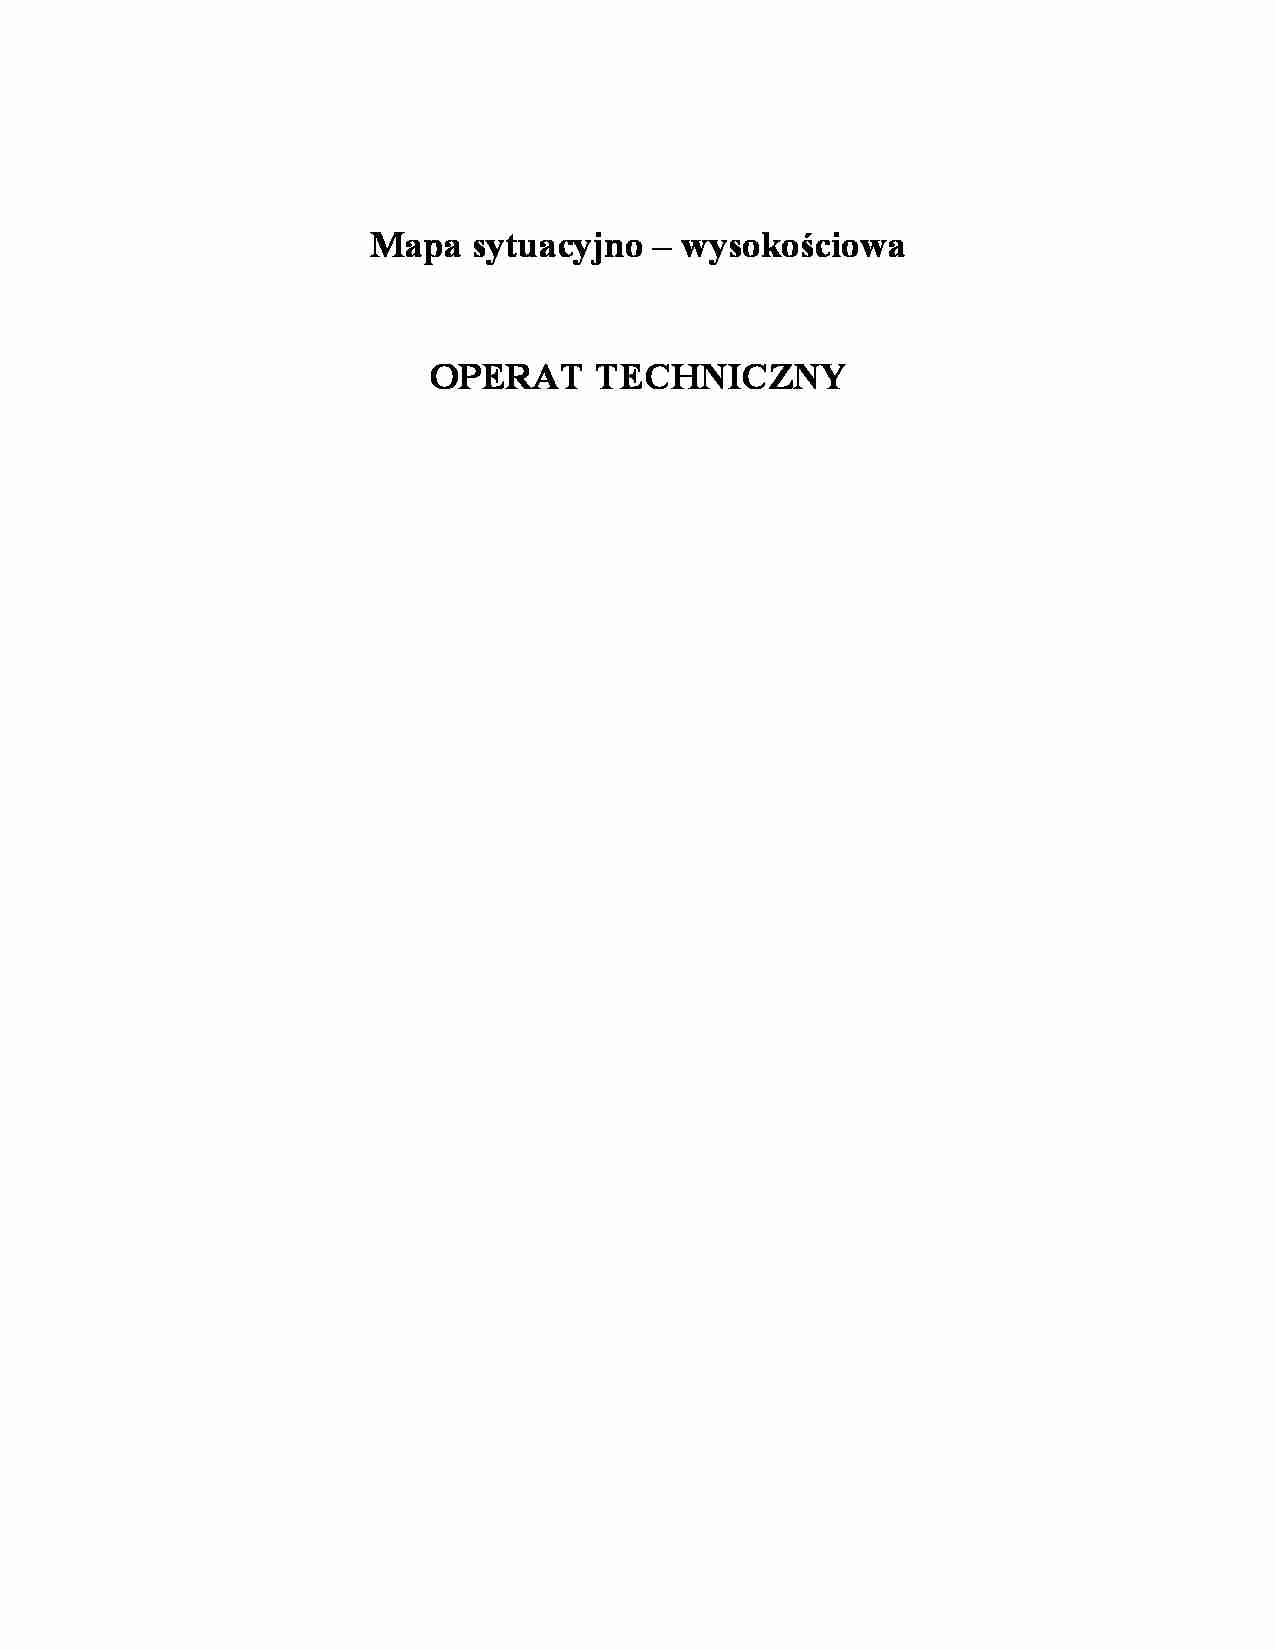 Operat techniczny - geodezja - strona 1